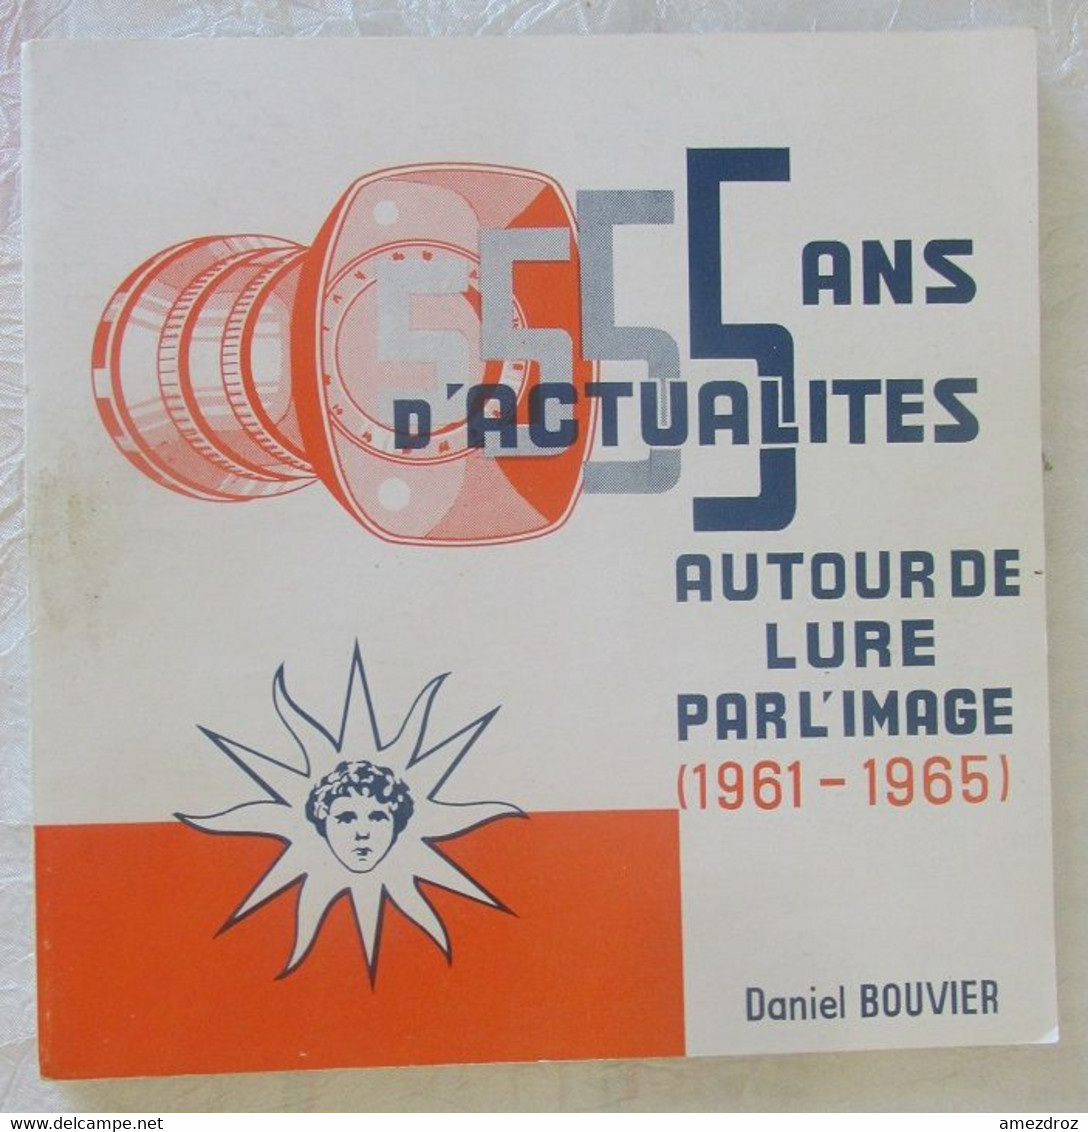 5 Ans D'actualités Autours De Lure Par L'image (1961-1965) - Daniel Bouvier - Franche-Comté